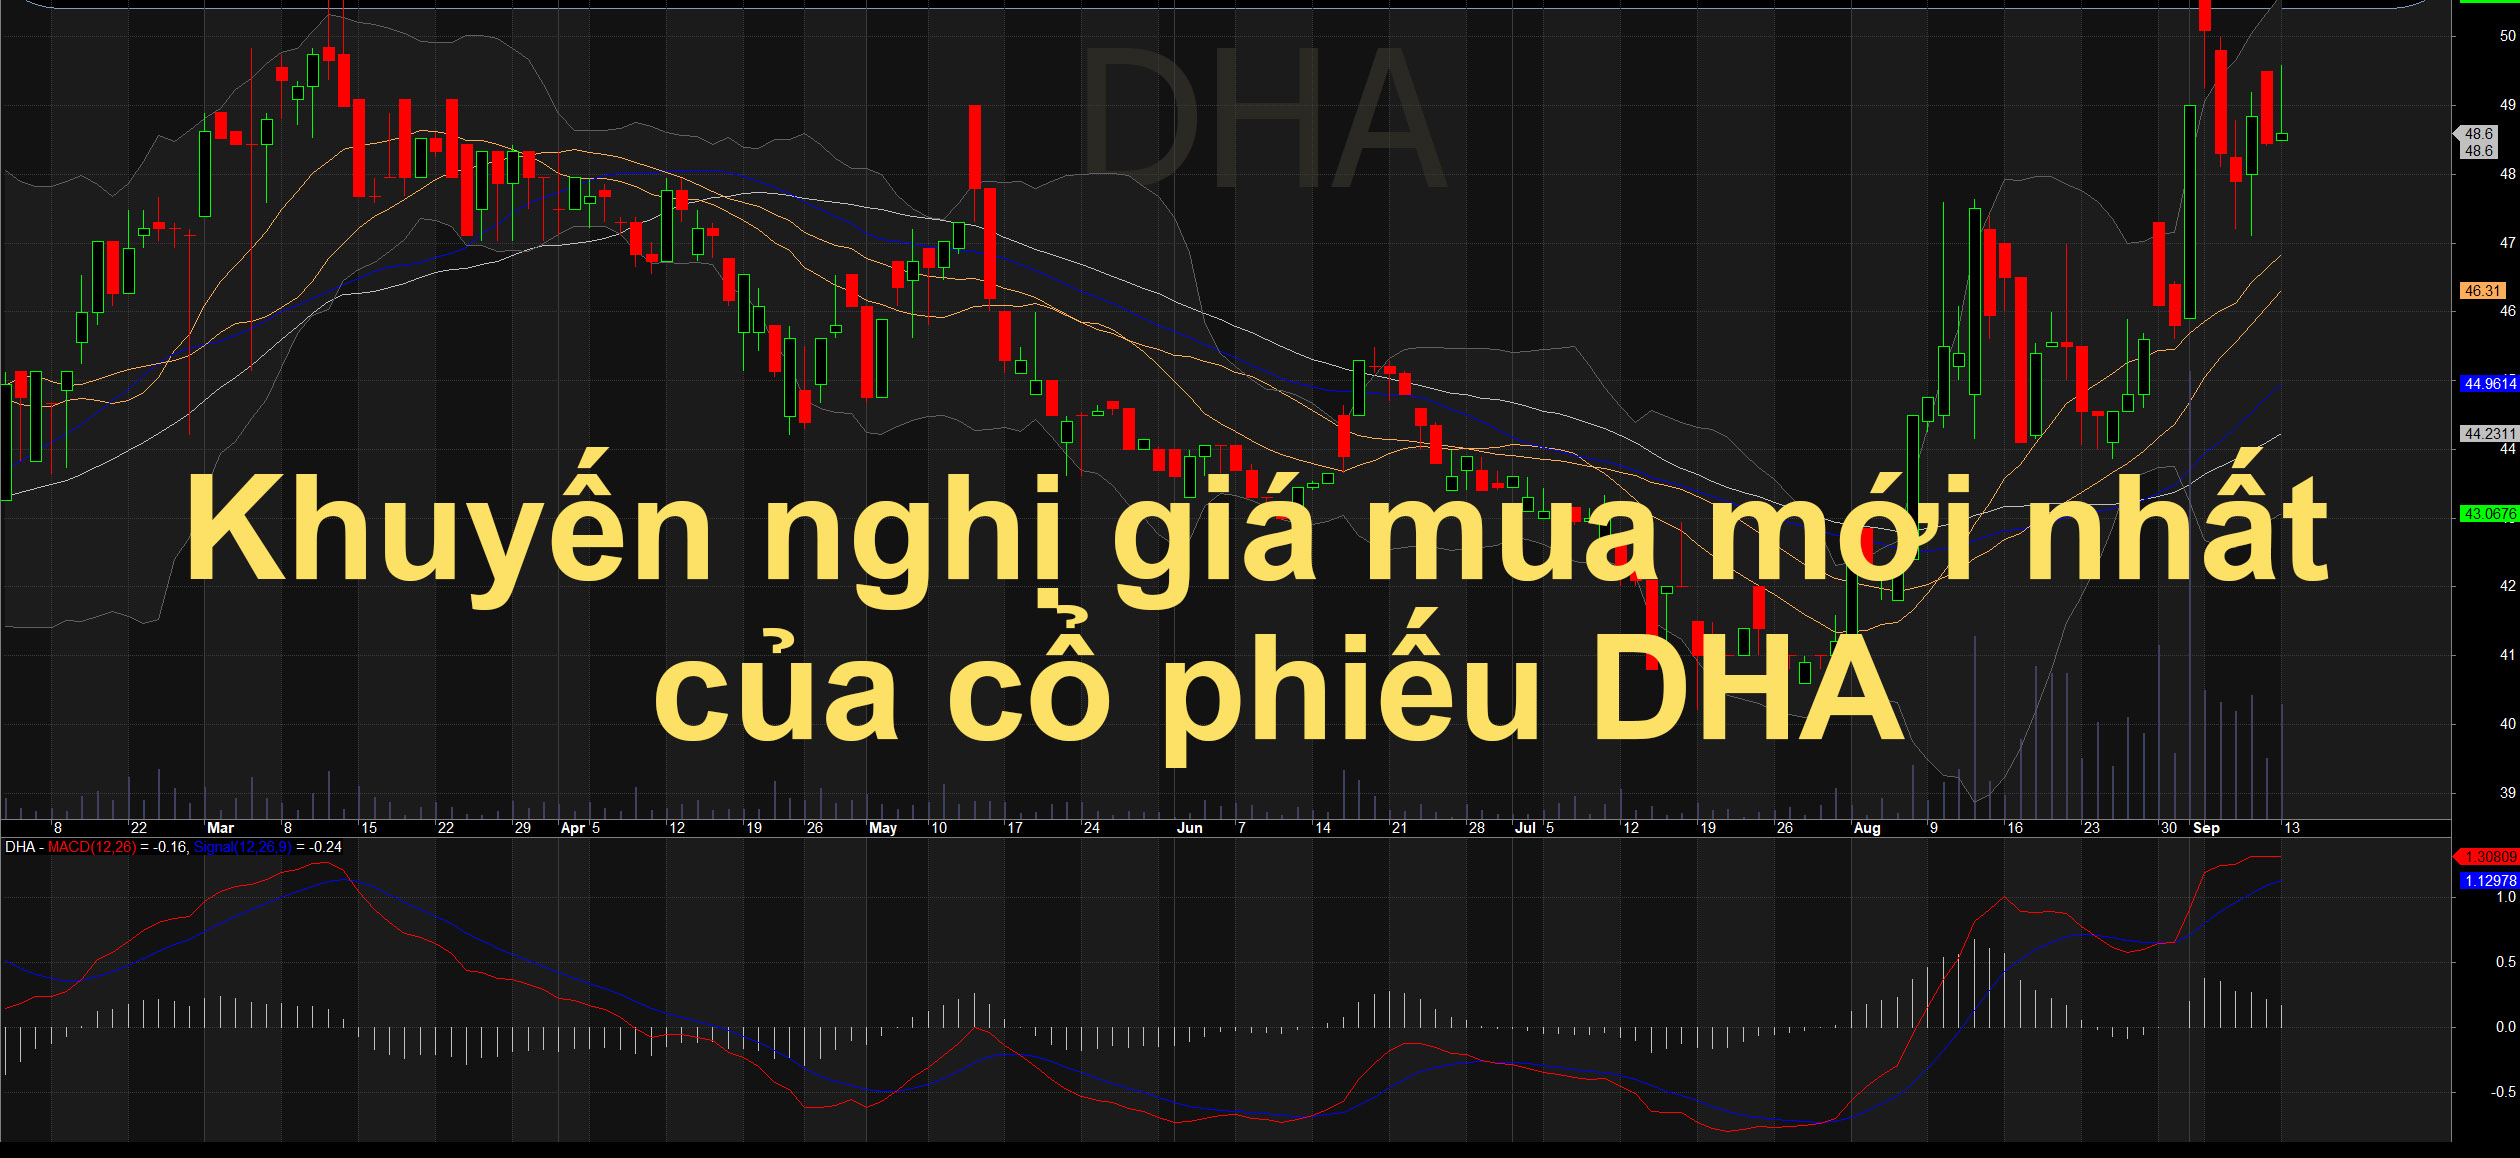 Thông tin khuyến nghị giá mua mục tiêu của cổ phiếu DHA